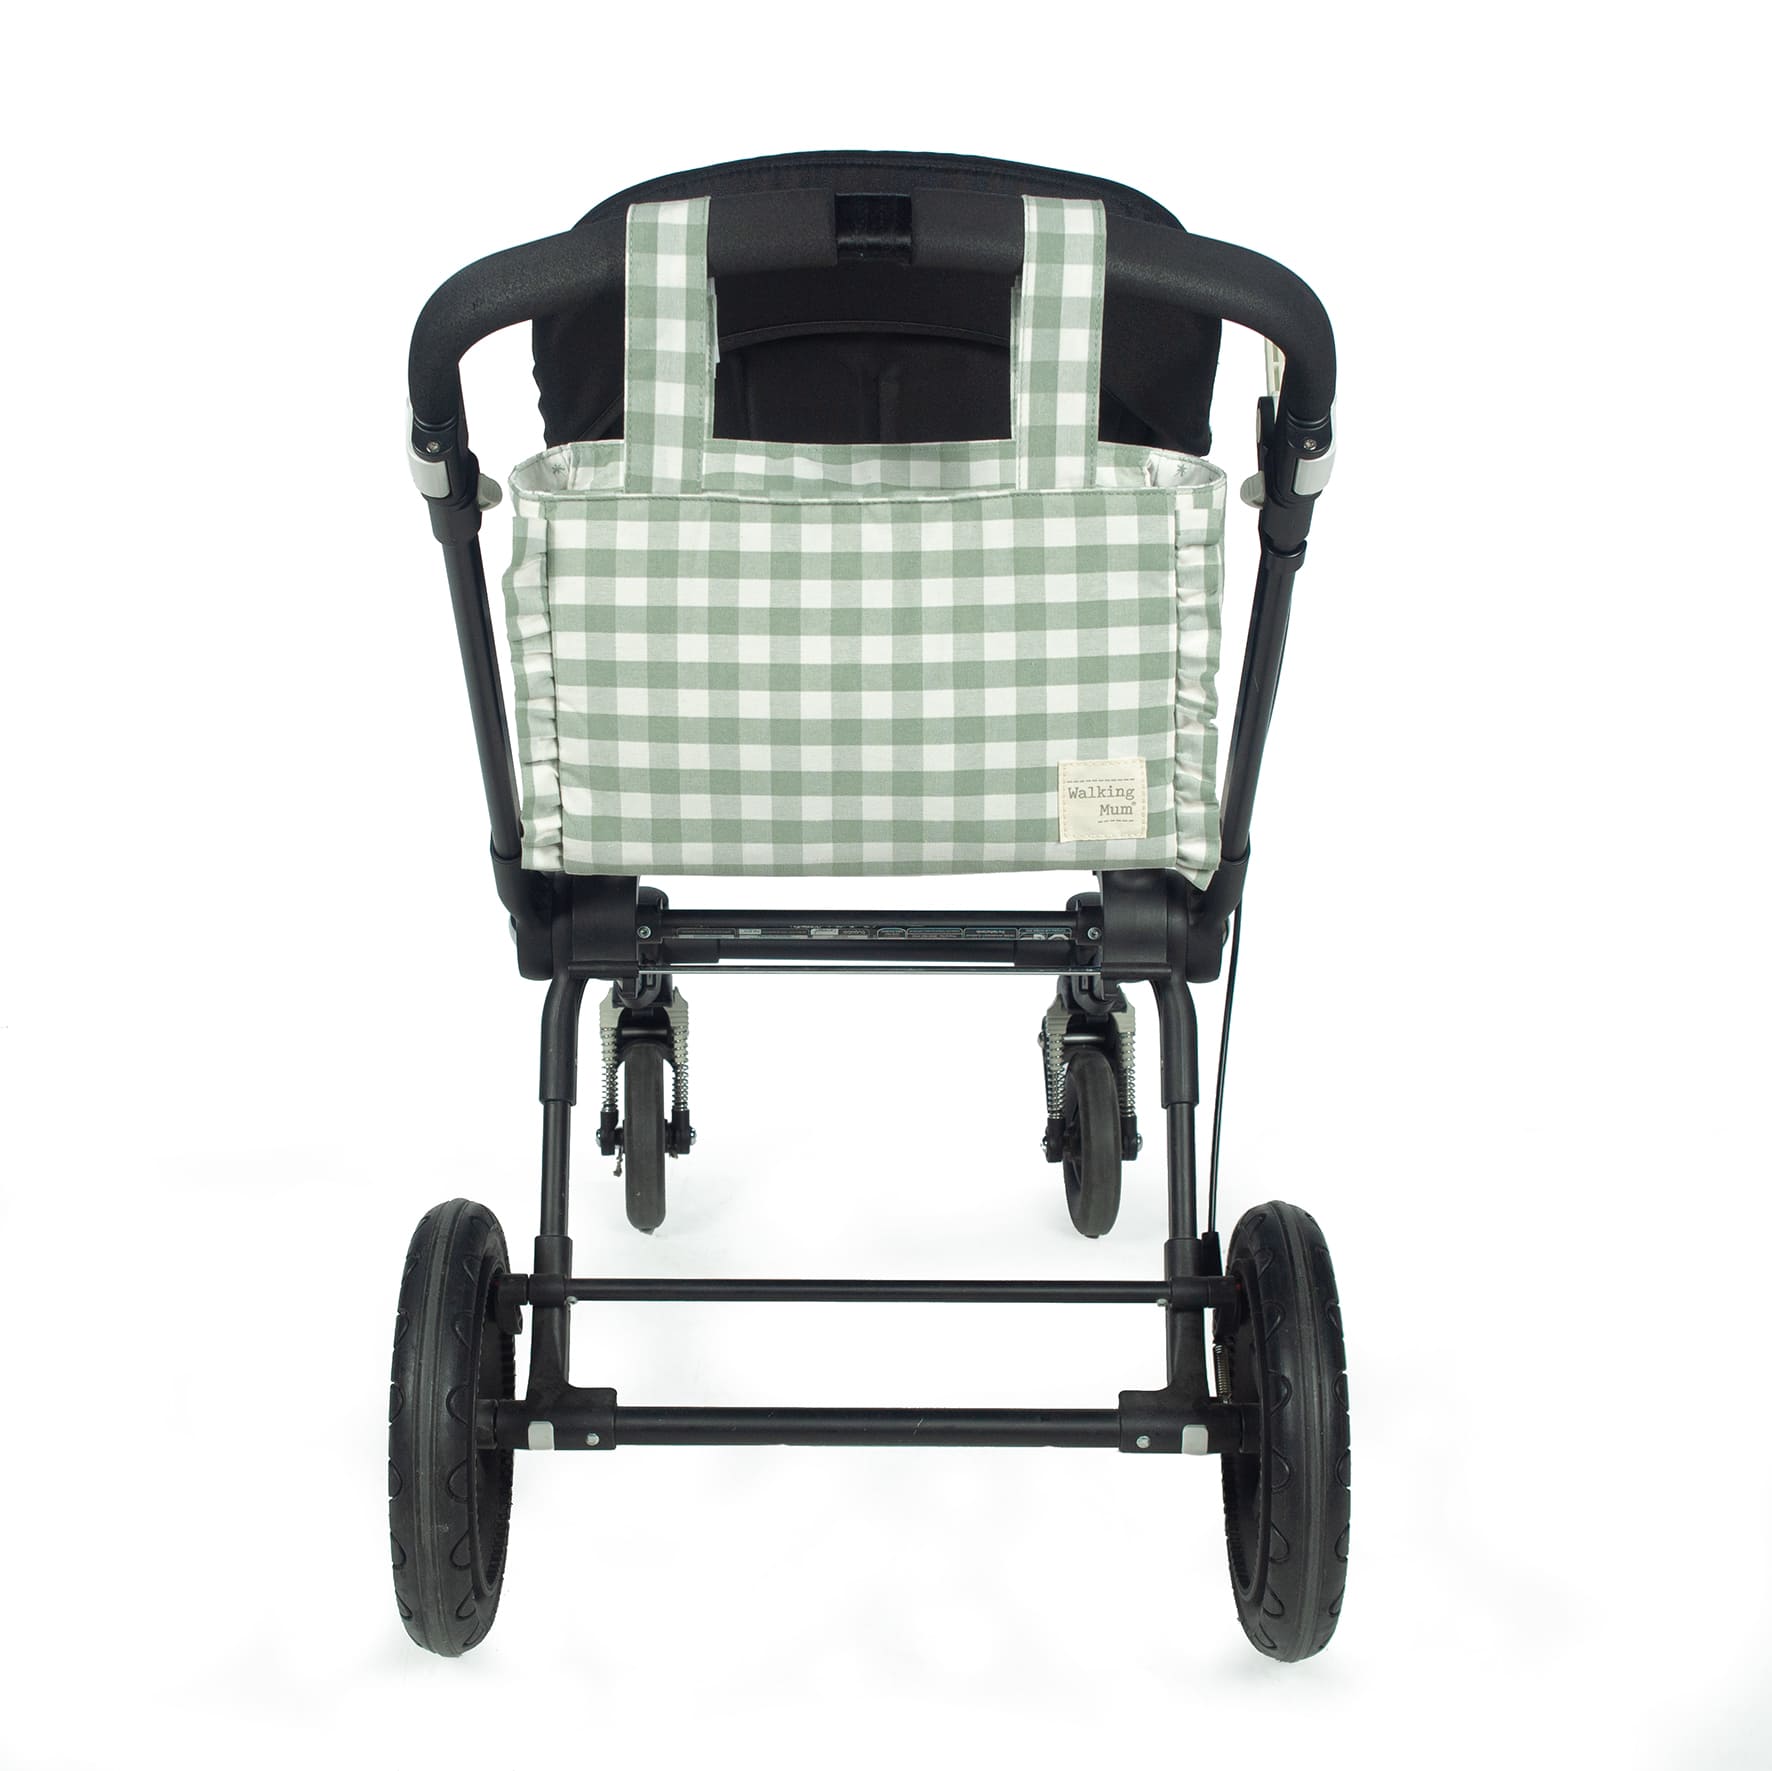 Bolsa Canastilla Remy Verde Walking Mum - Ares Baby, todo para tu bebé